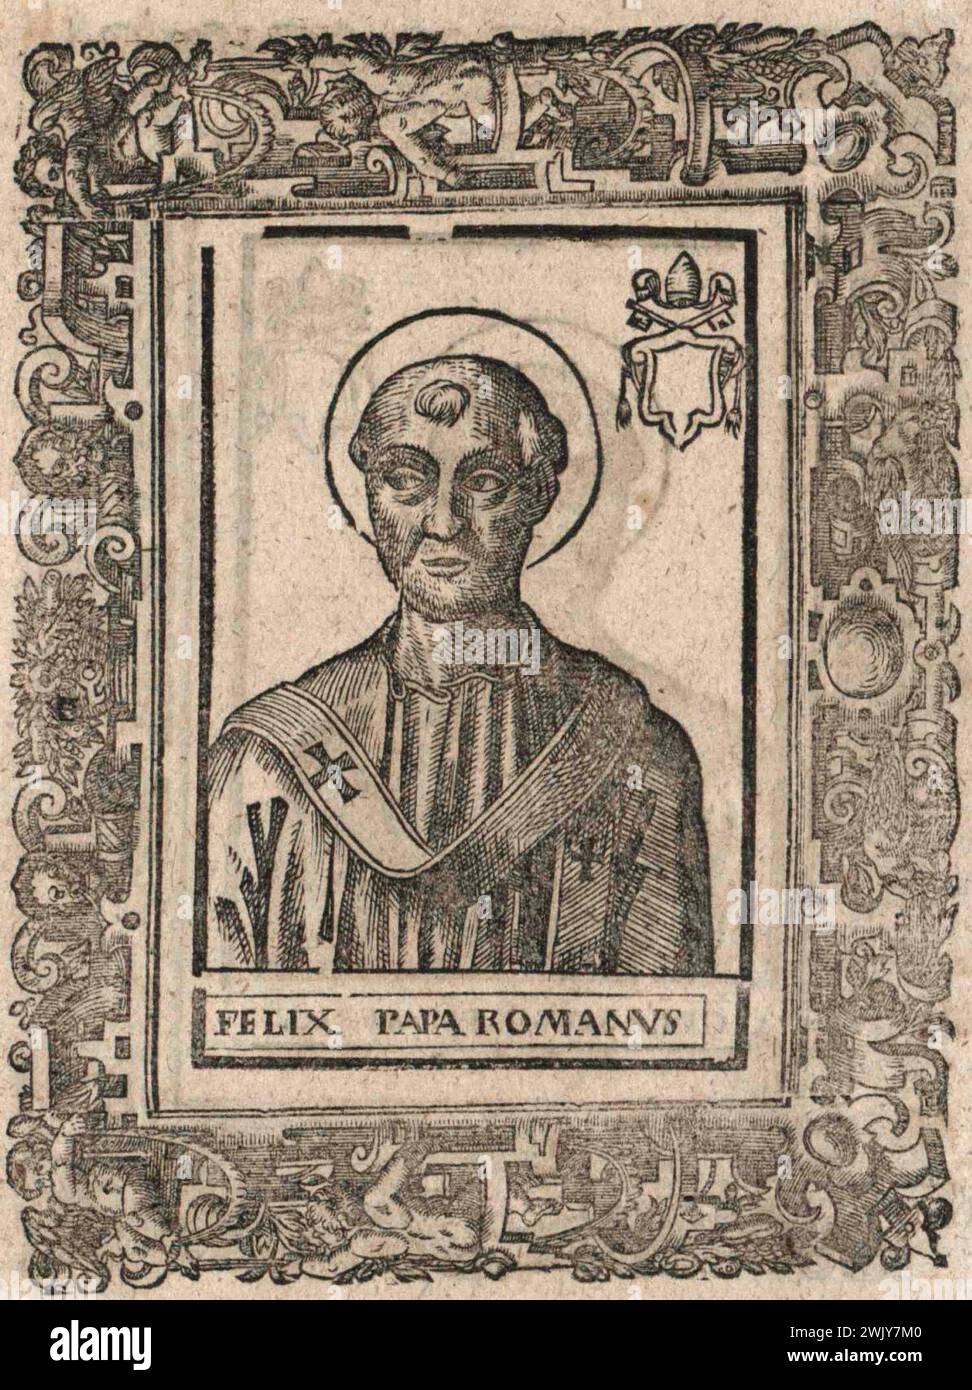 Gravure du XVIe siècle du pape Félix III qui fut pontife de AD483 à AD492. Il était le 48e pape. Banque D'Images